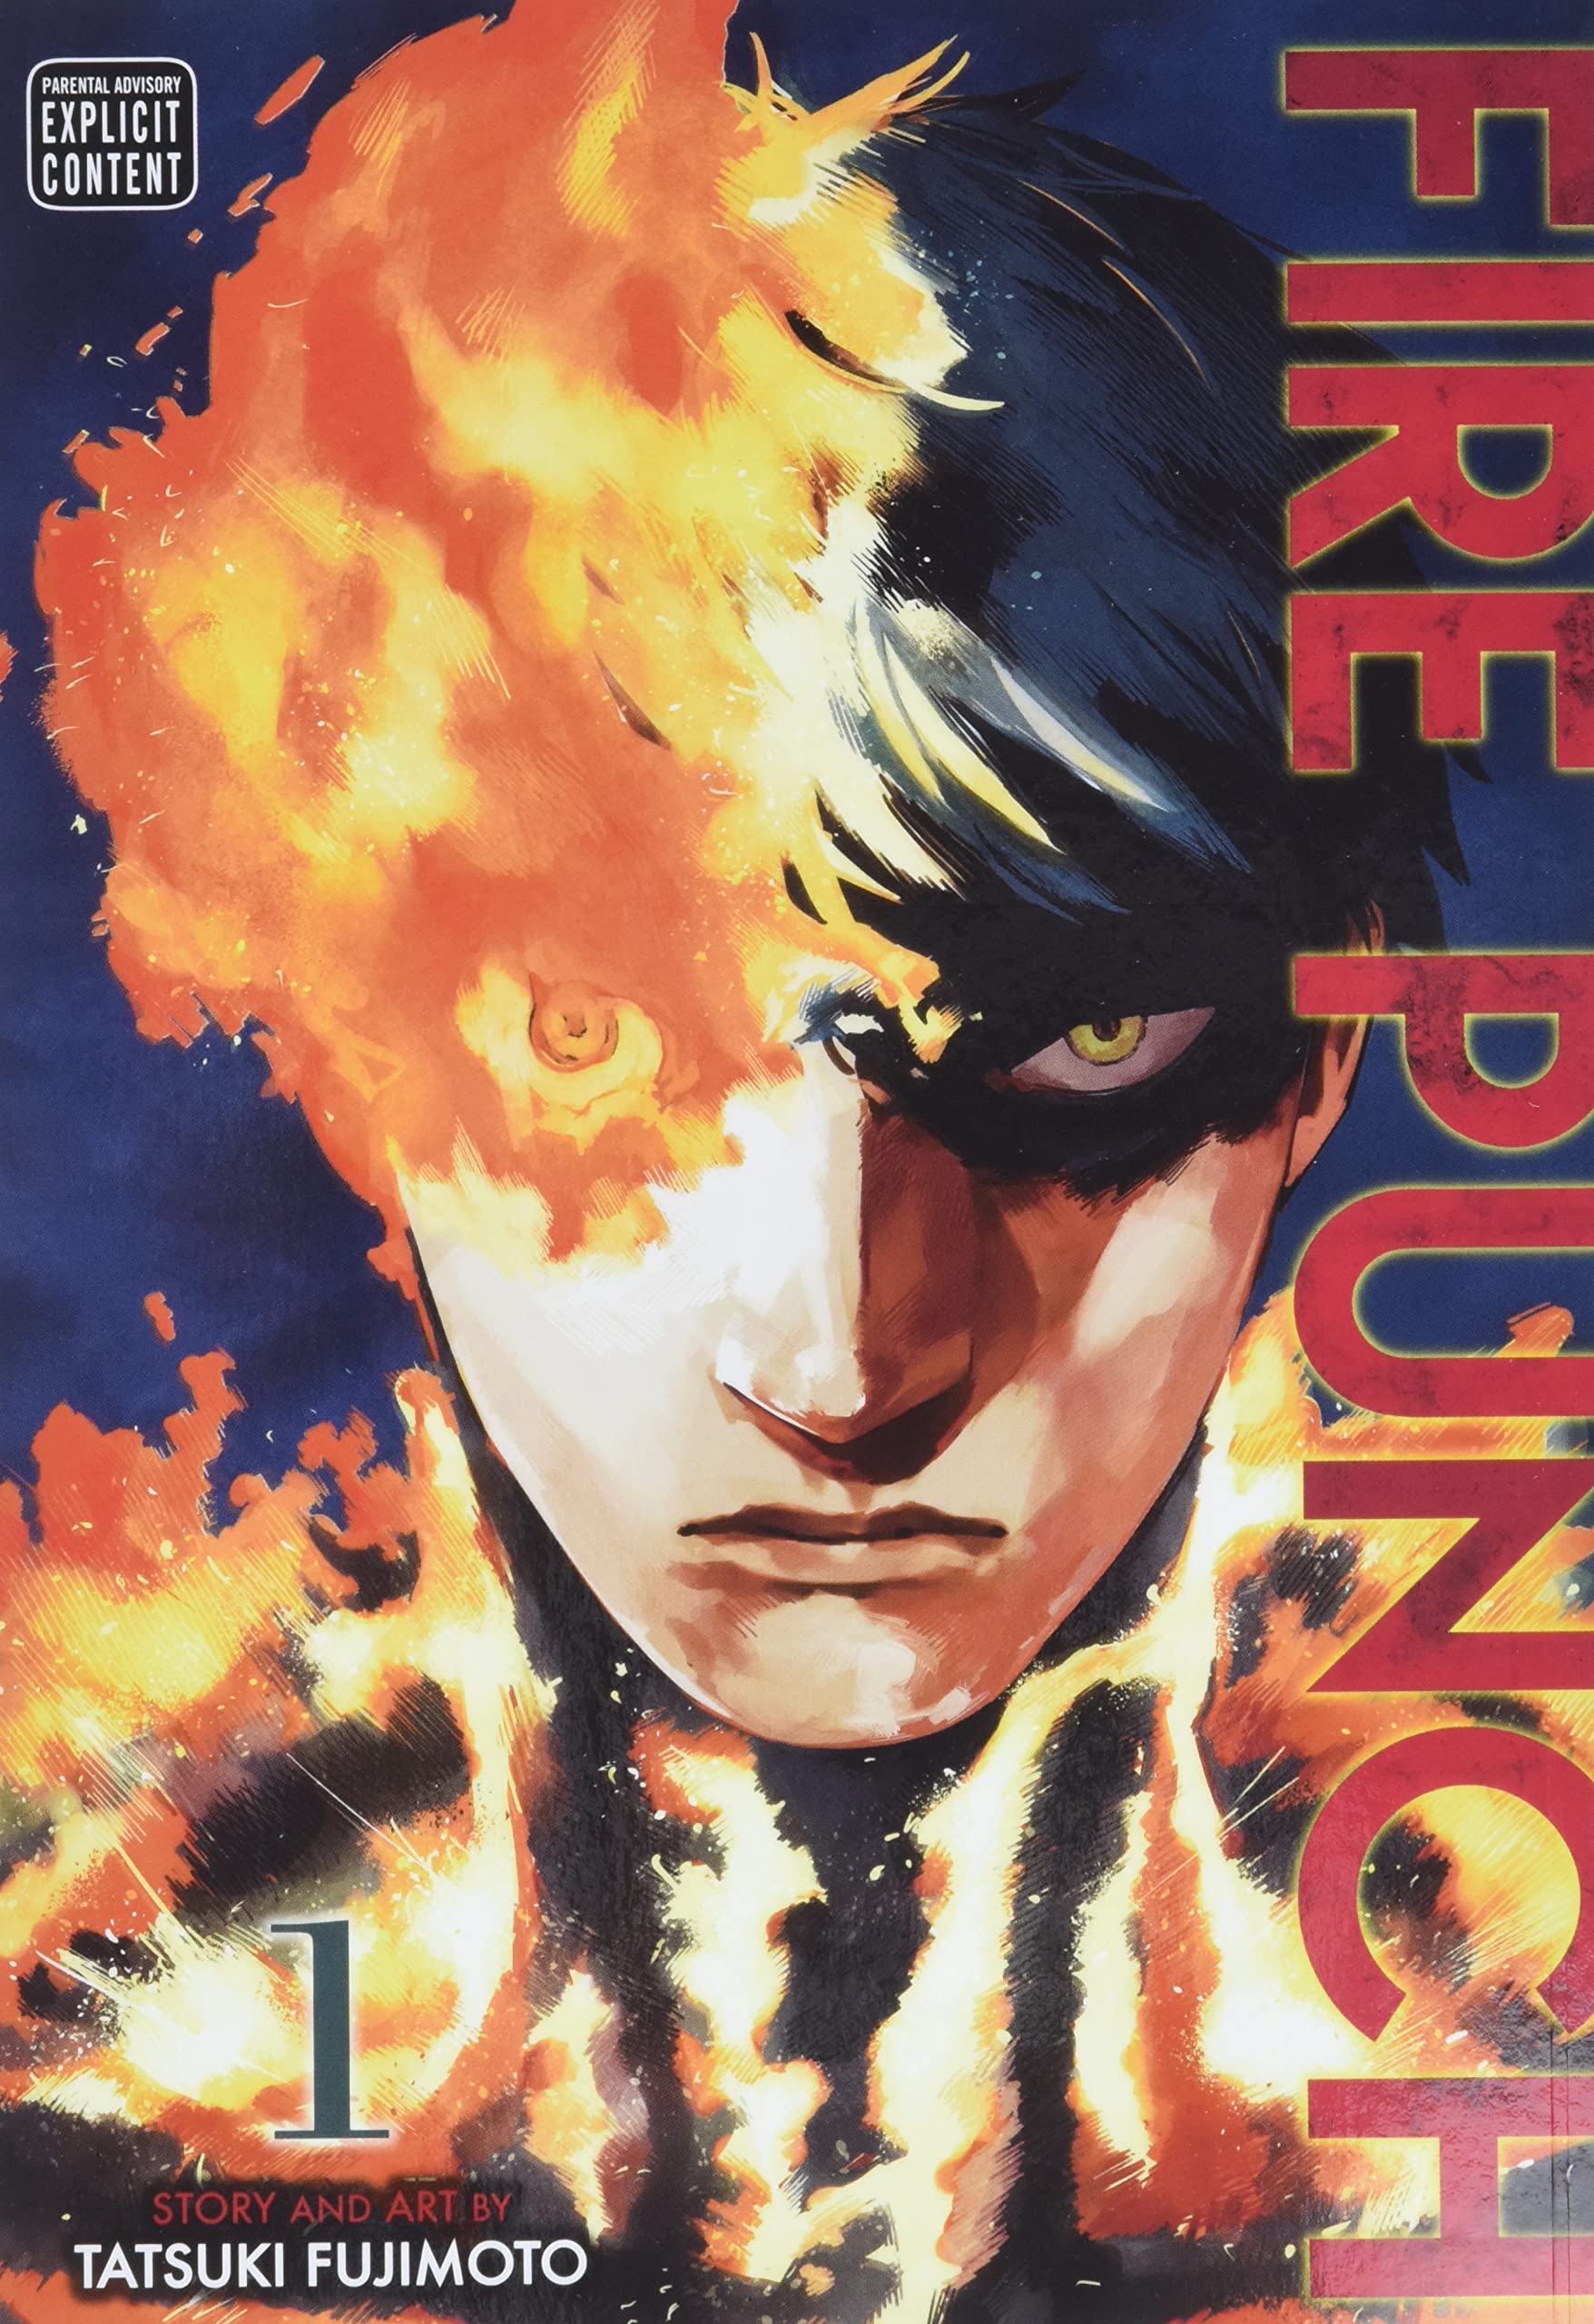 la copertina del primo volume di fire punch * nerdface